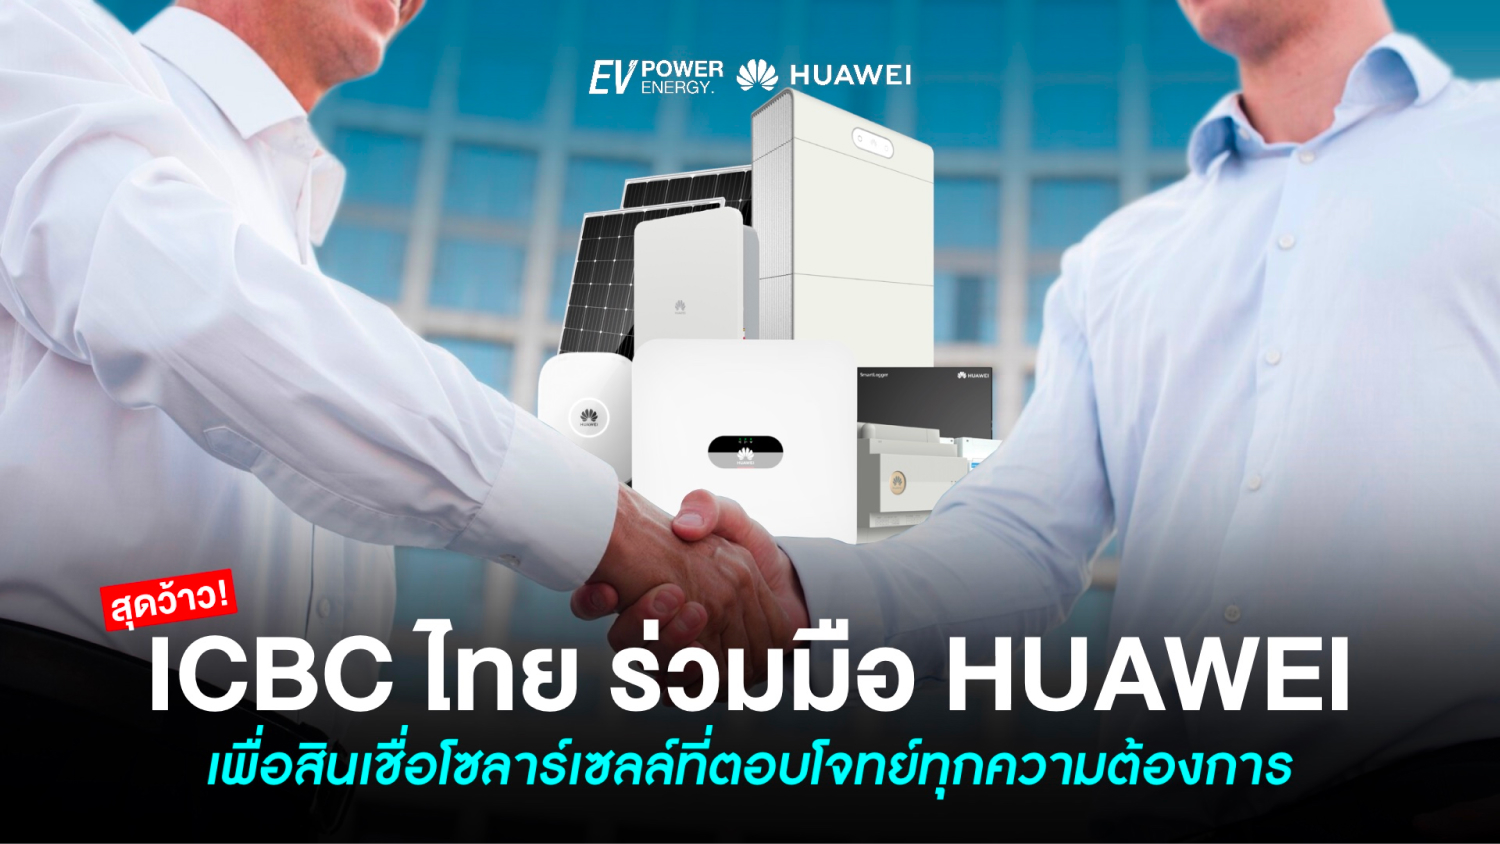 ICBC ร่วมมือ Huawei เพื่อสินเชื่อโซล่าเซลล์ที่ตอบโจทย์ทุกความต้องการ